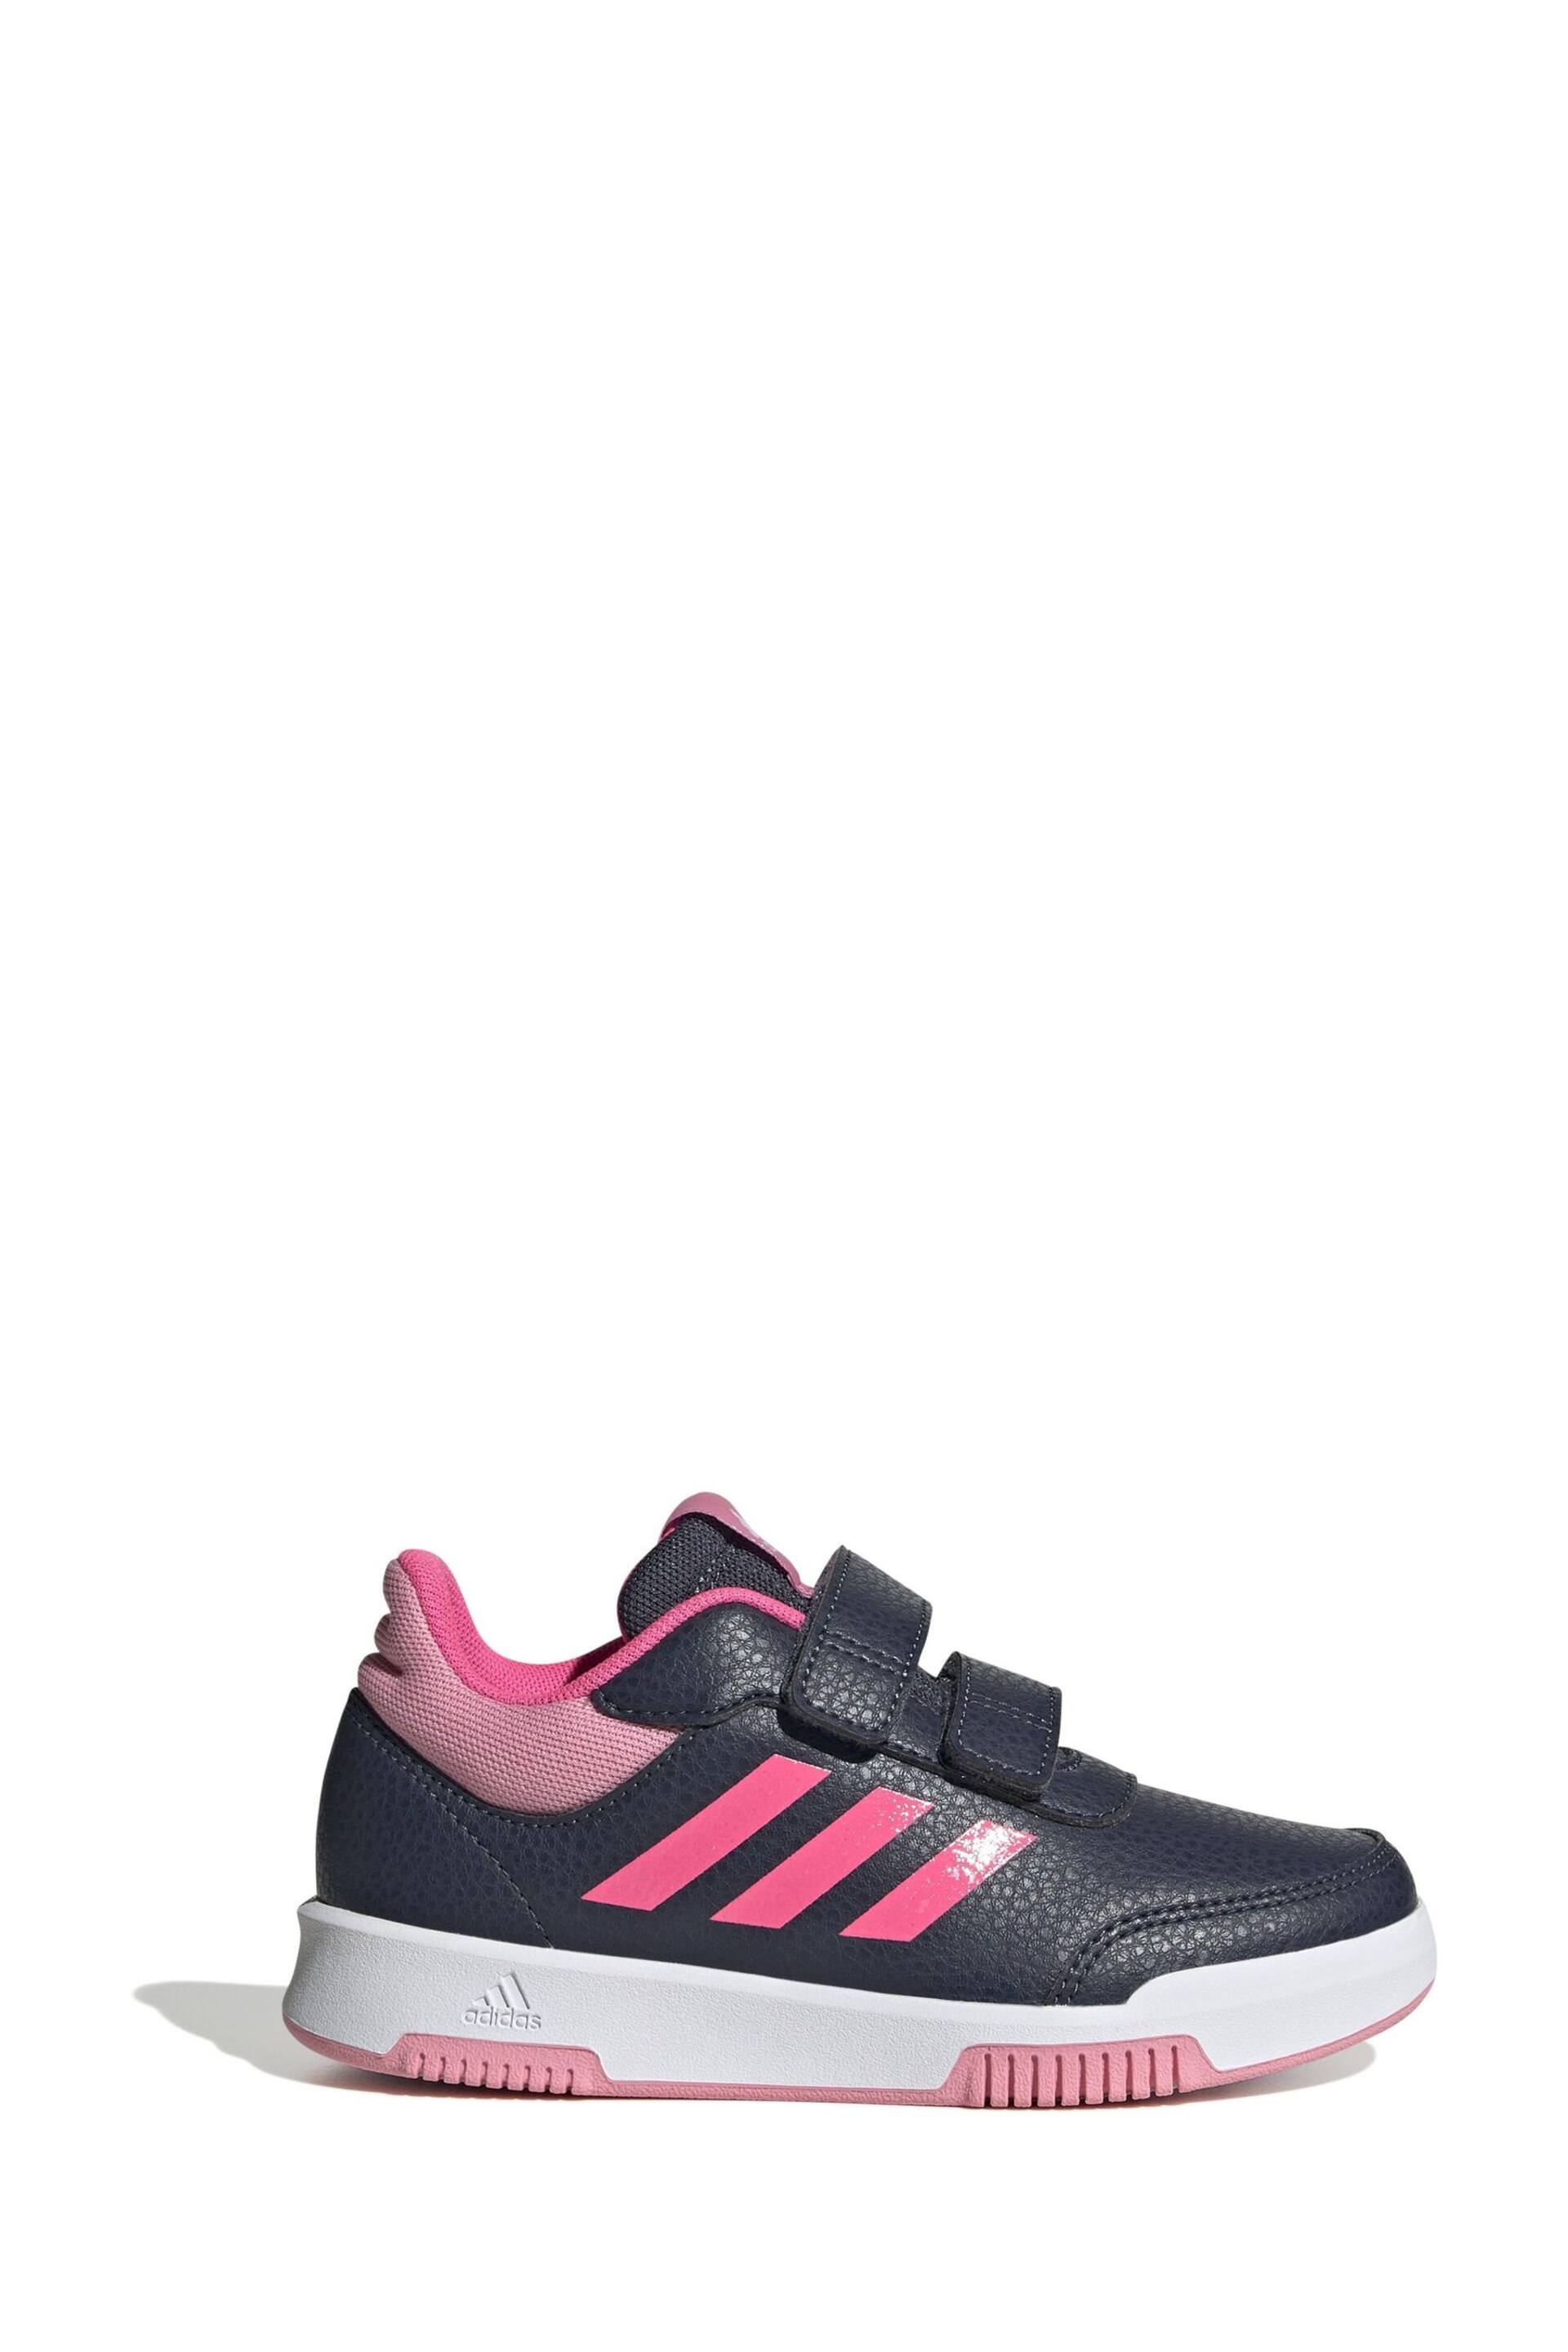 adidas Black/Pink Kids Sportswear Tensaur Hook And Loop Trainers - Image 1 of 8